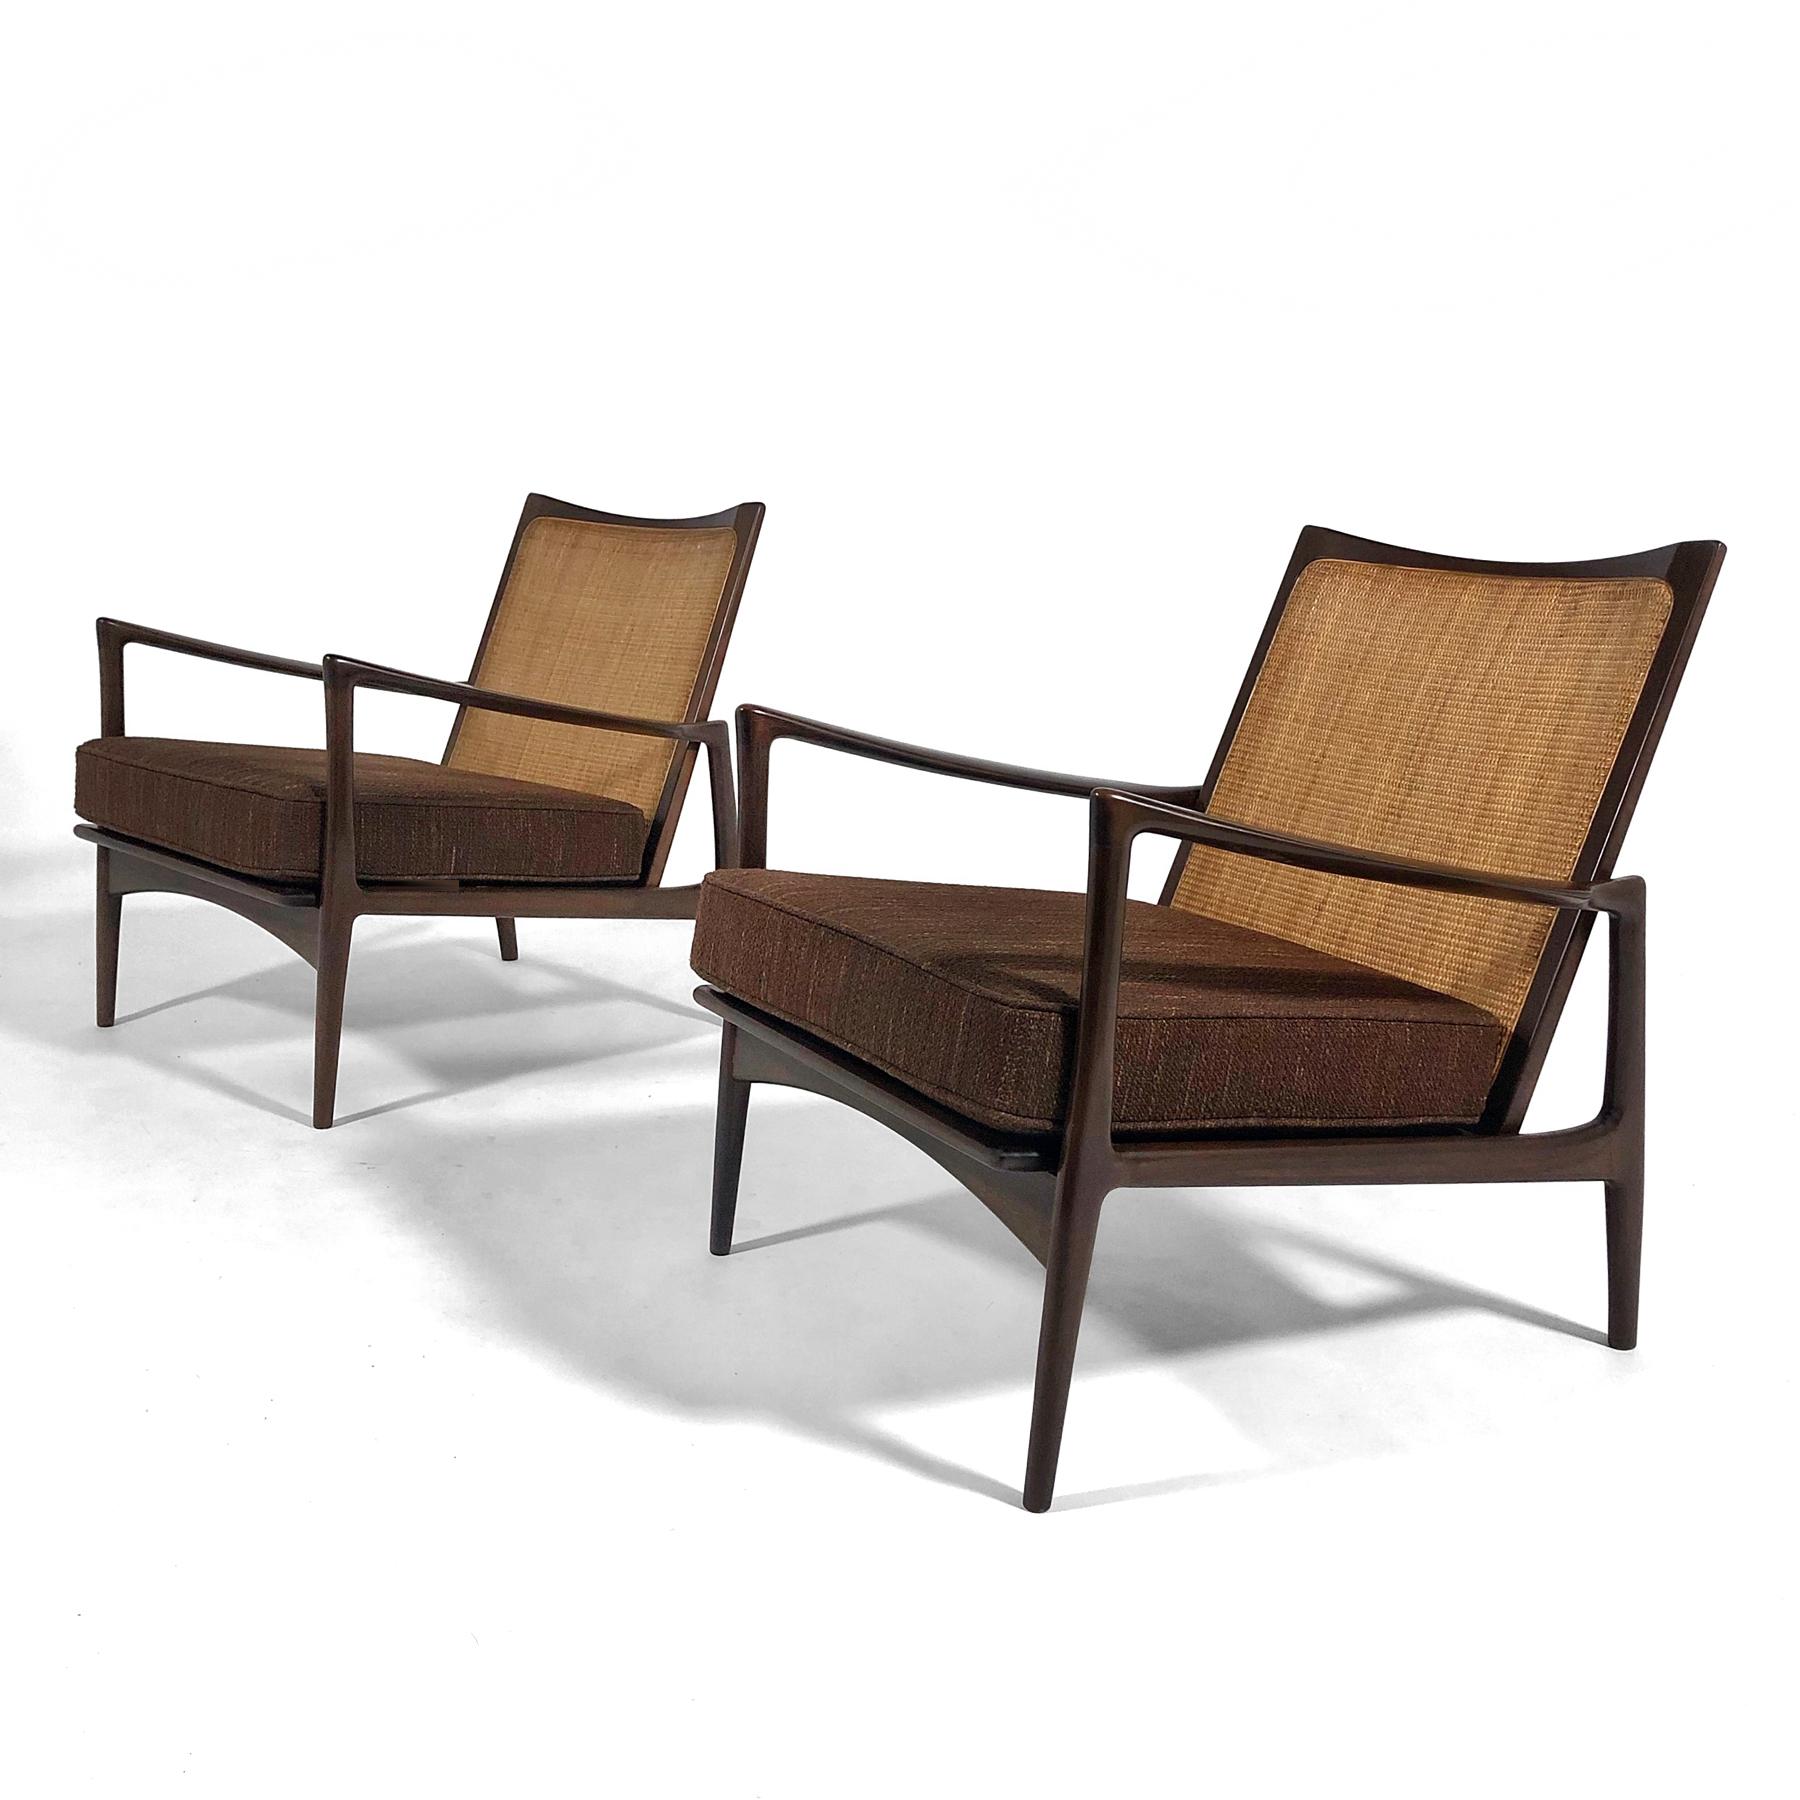 Diese beiden schönen Loungesessel, die Ib Kofod-Larsen für Selig entworfen hat, haben schöne Linien, Rückenlehnen aus Schilfrohr und neue Sitzkissen, die mit 